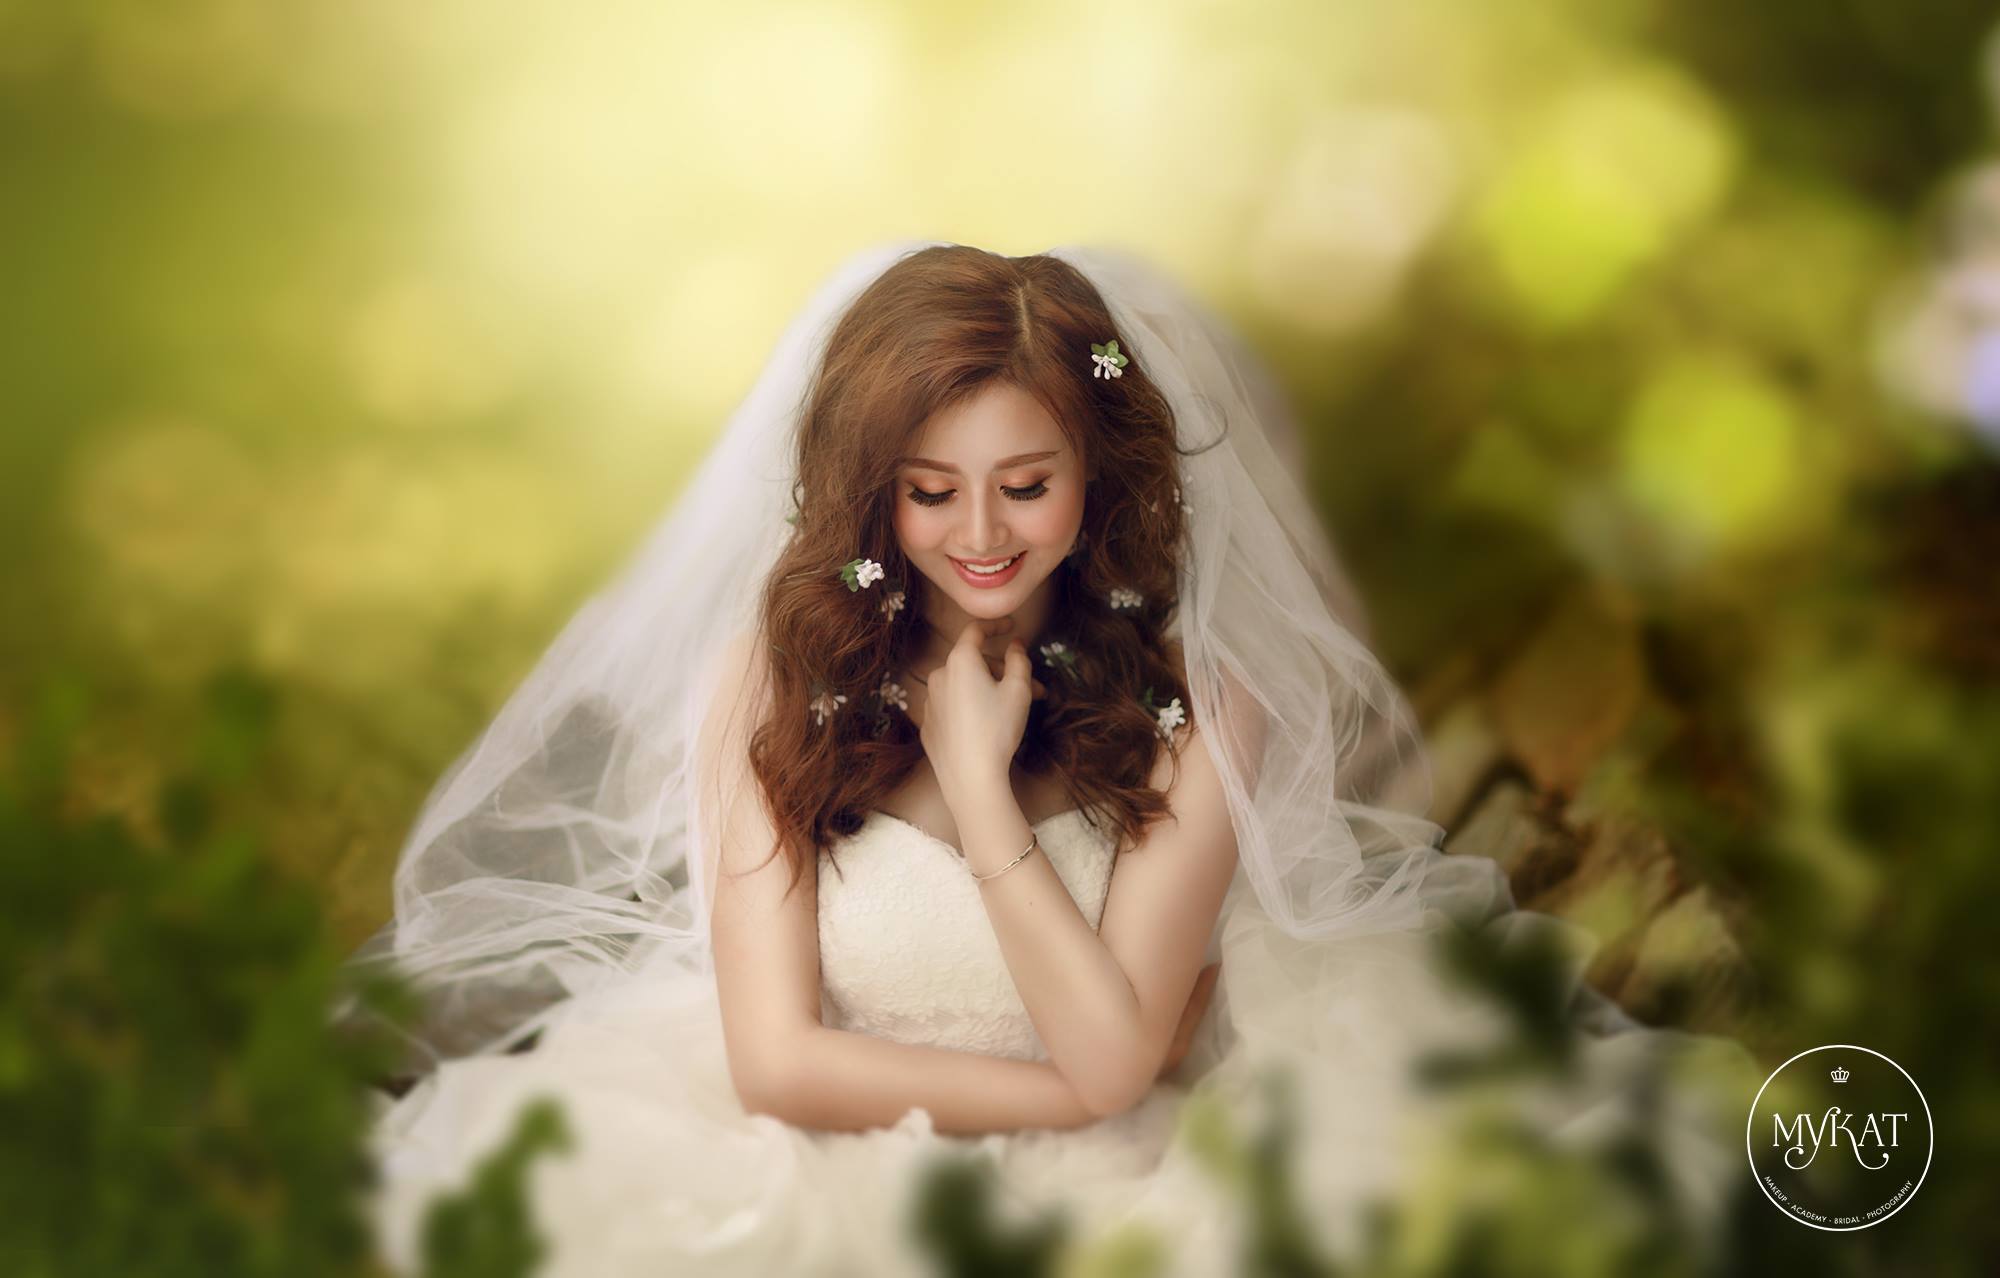 Top 7 tiệm trang điểm cô dâu đẹp nhất tại Đà Lạt -  MyKat Studio